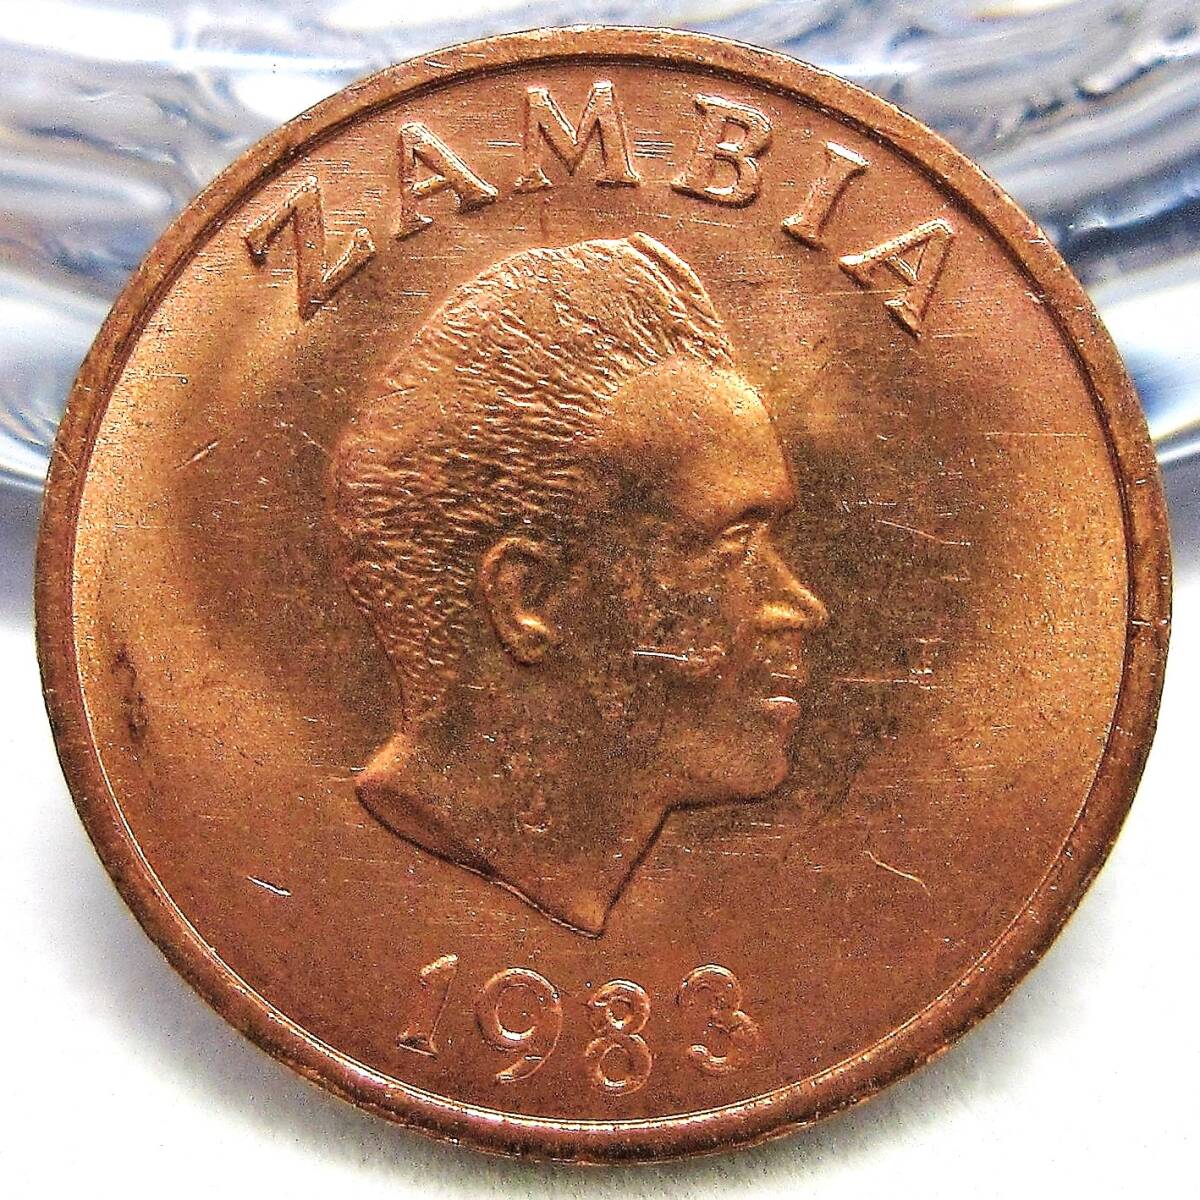 ザンビア 1ングェー 1983年 17.50mm 2.09gの画像2